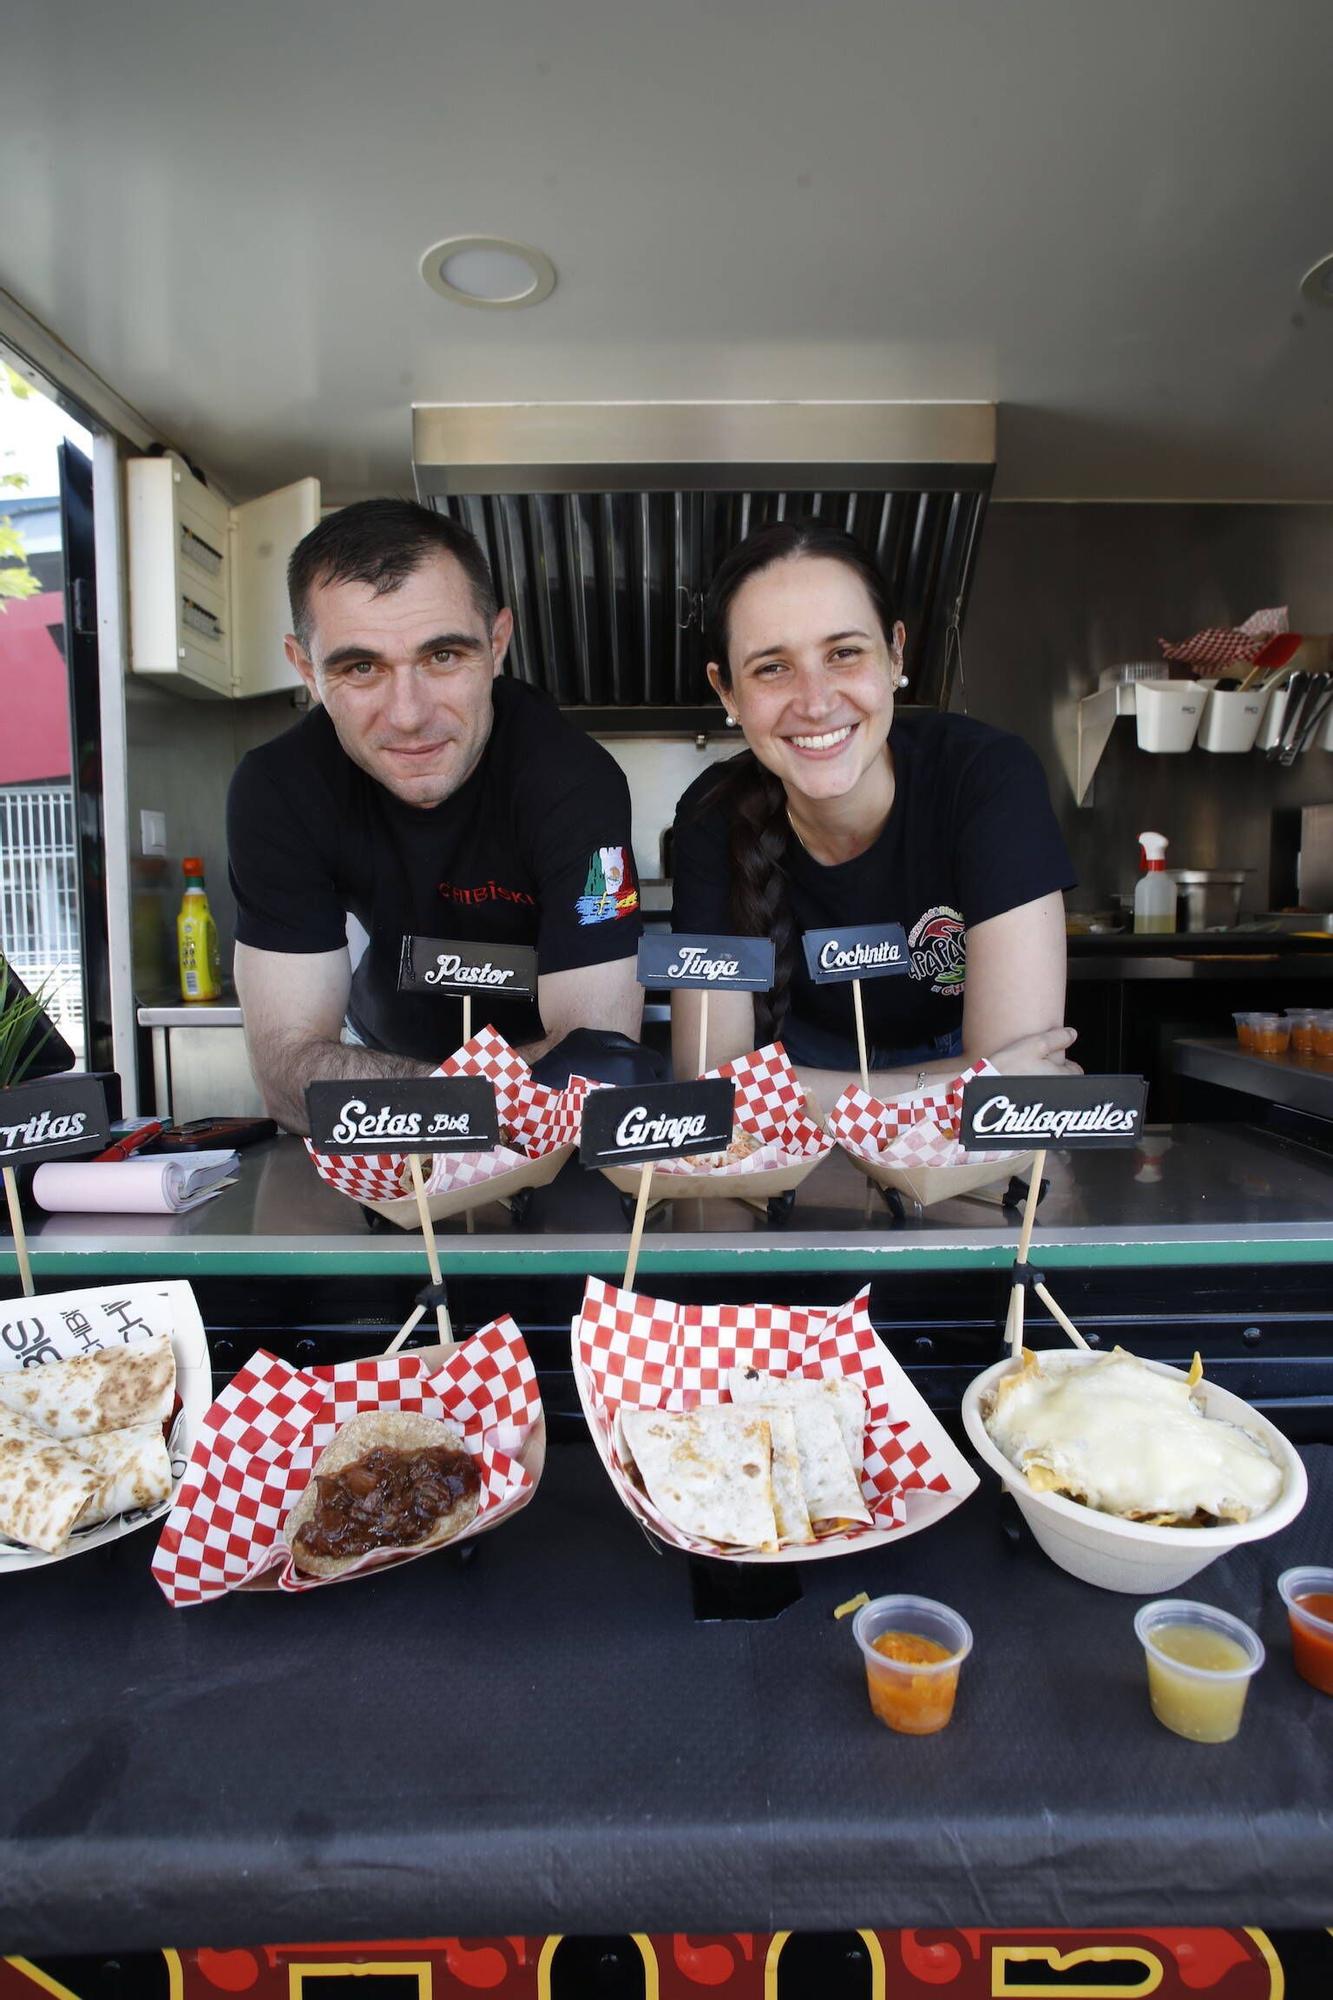 Las populares food trucks, otro de los grandes atractivos del Festival Metropoli (en imágenes)